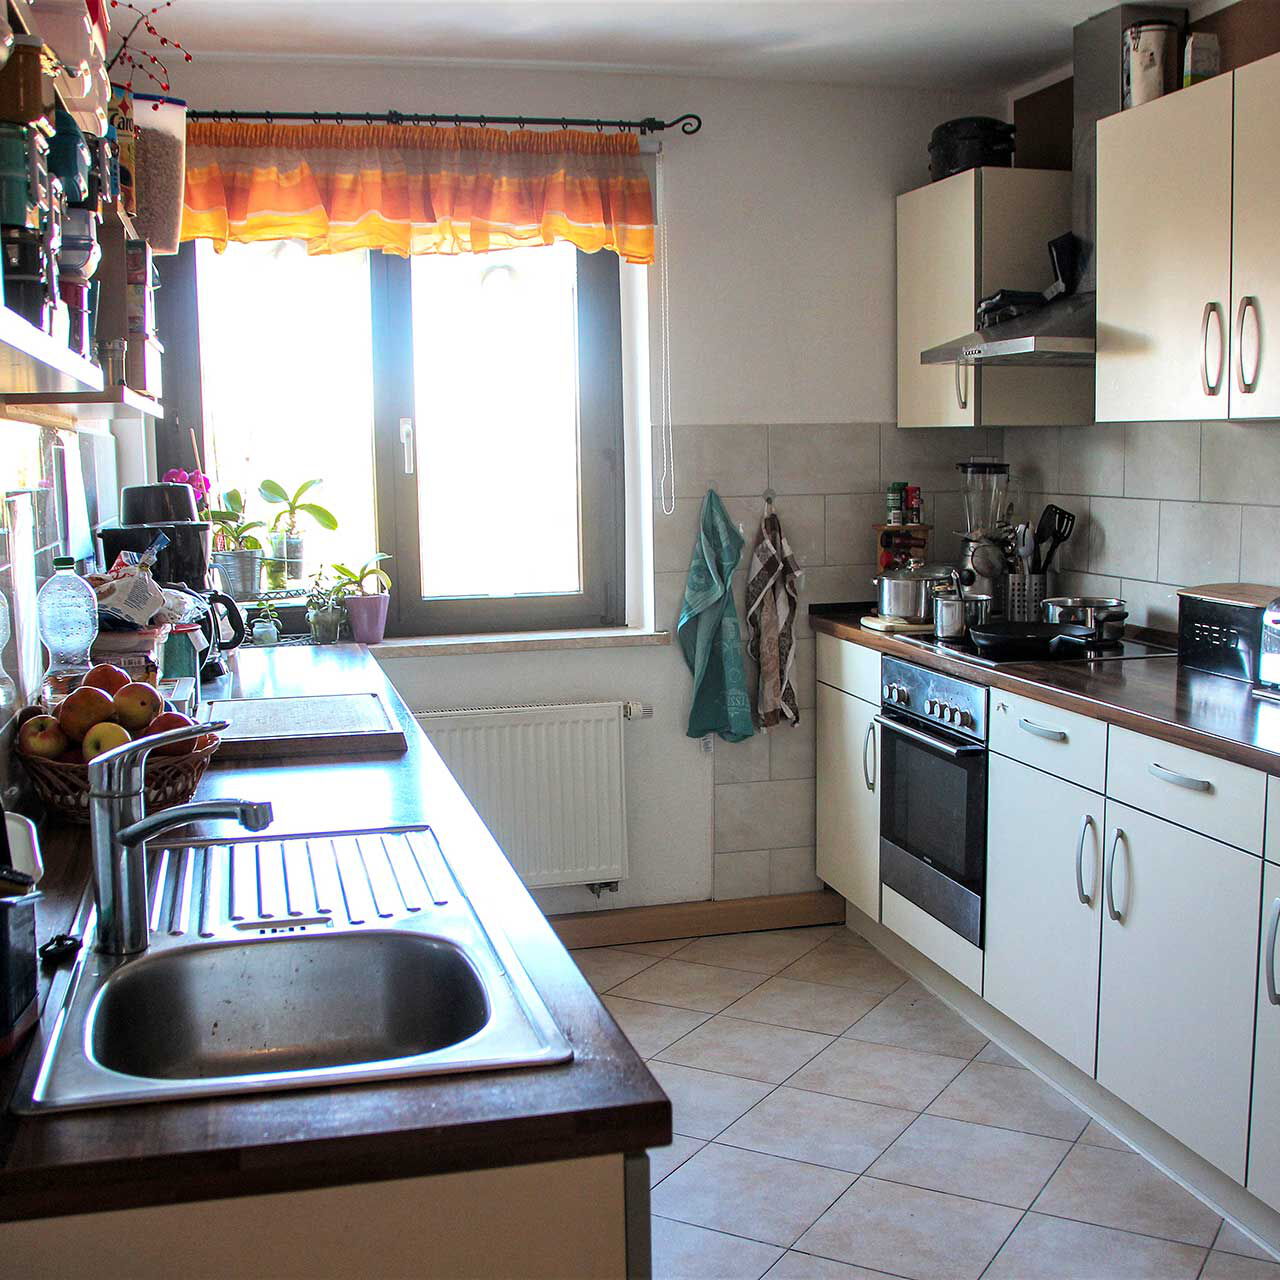 Eine Küche mit einer Küchenzeile auf der rechten Seite und den Spül- und Arbeitsbereich auf der linken Wandseite.